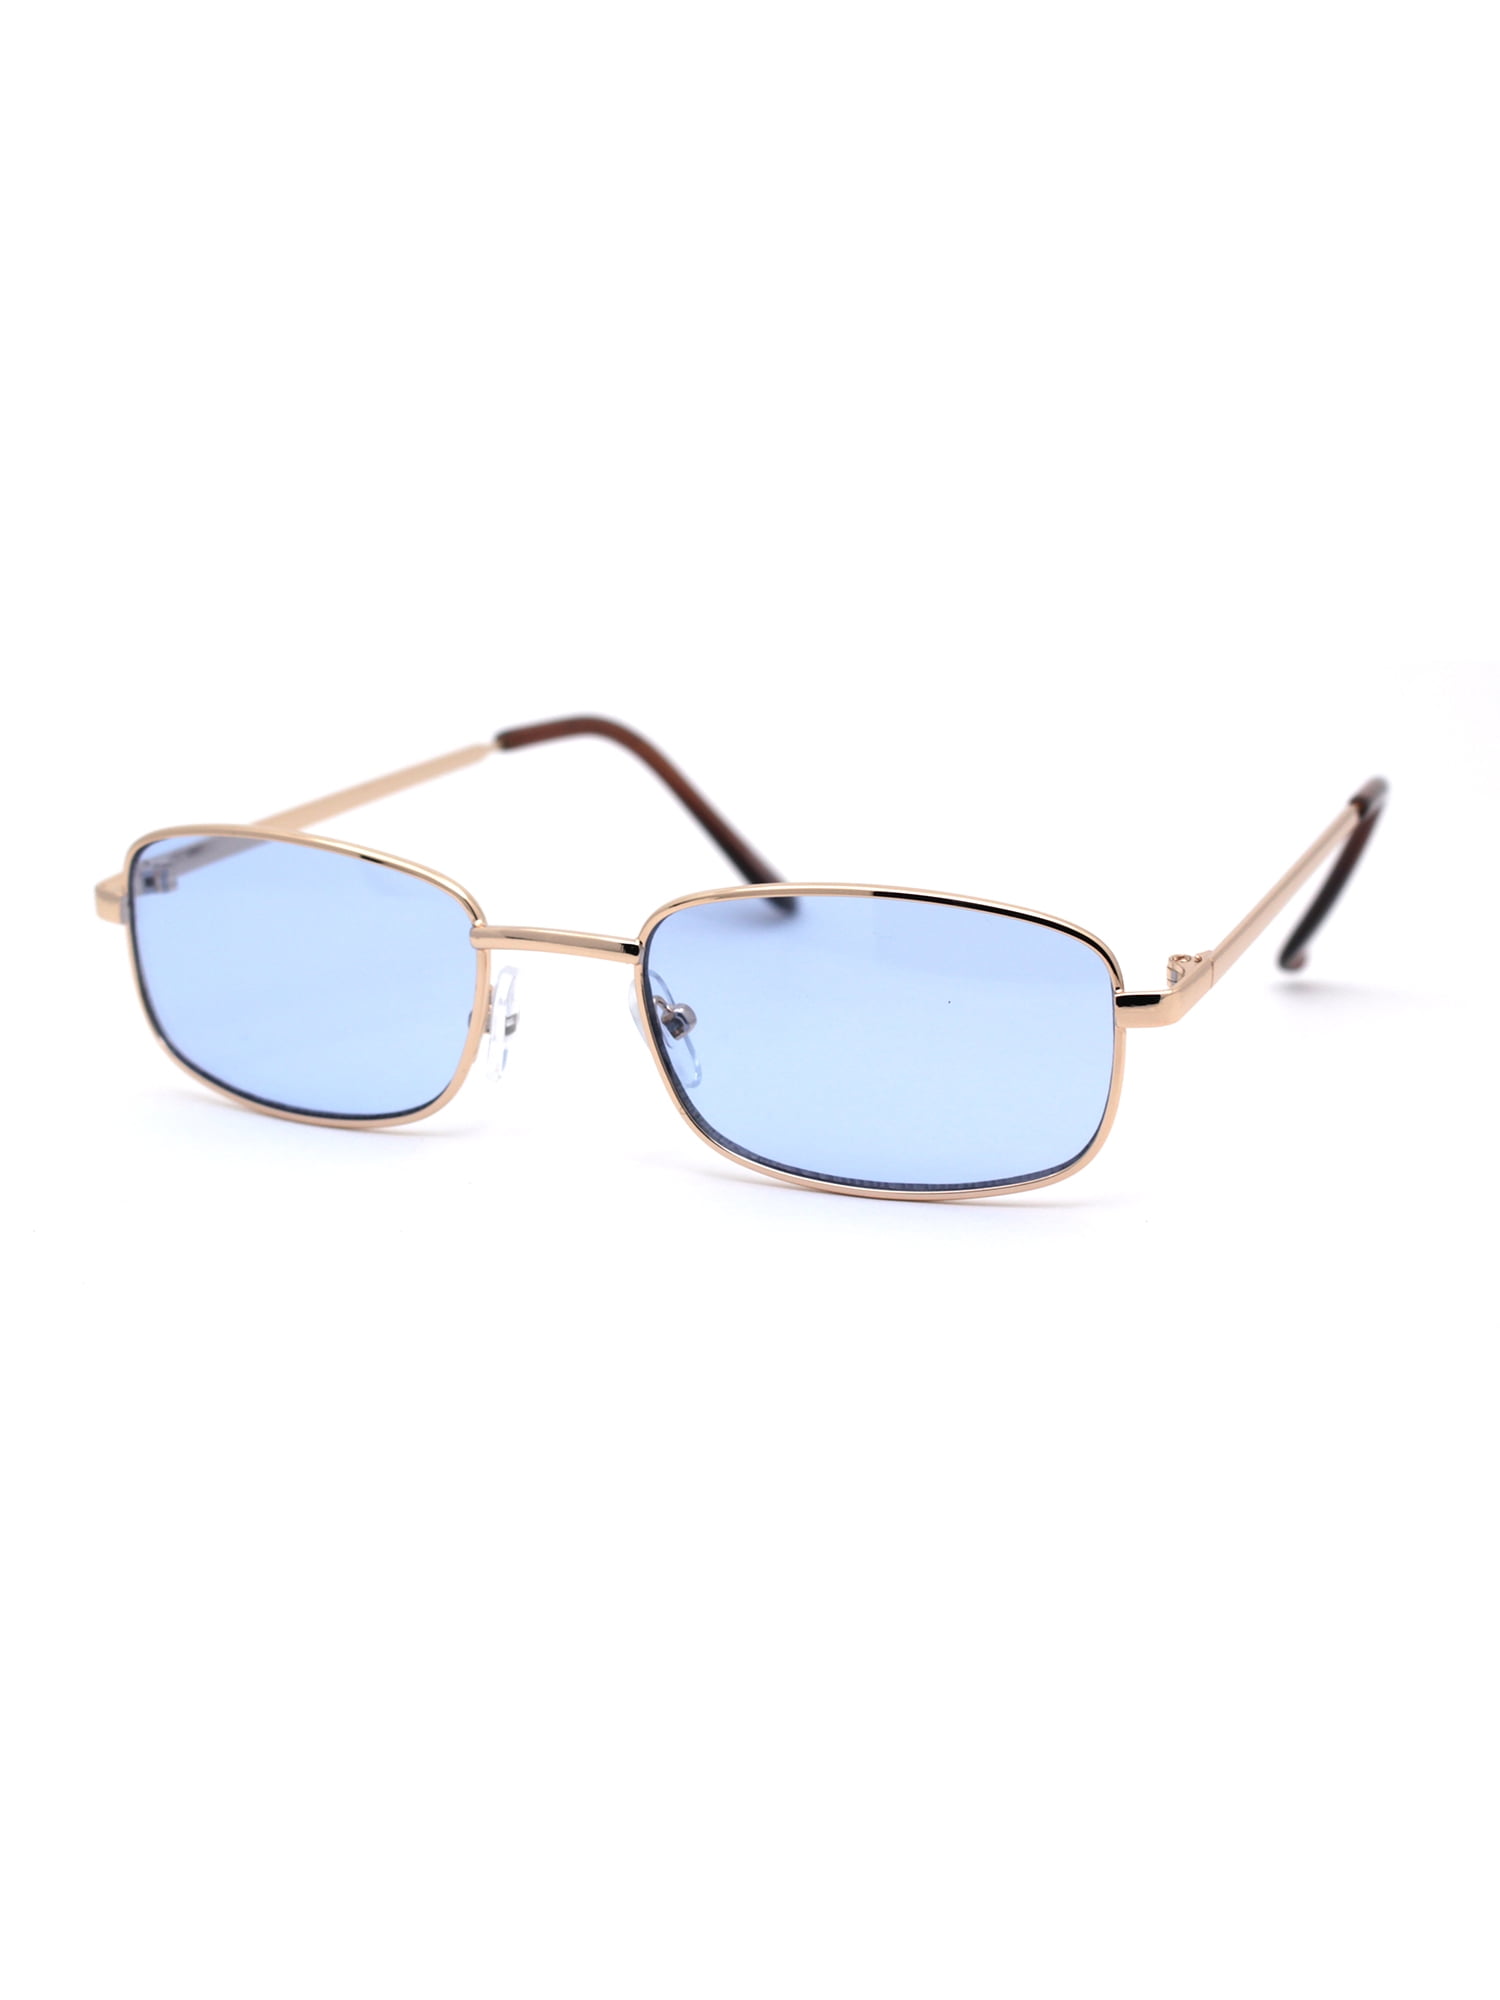 Sa106 Mens Narrow Rectangular Pop Color Lens Metal Rim Classic Sunglasses Gold Blue Walmart